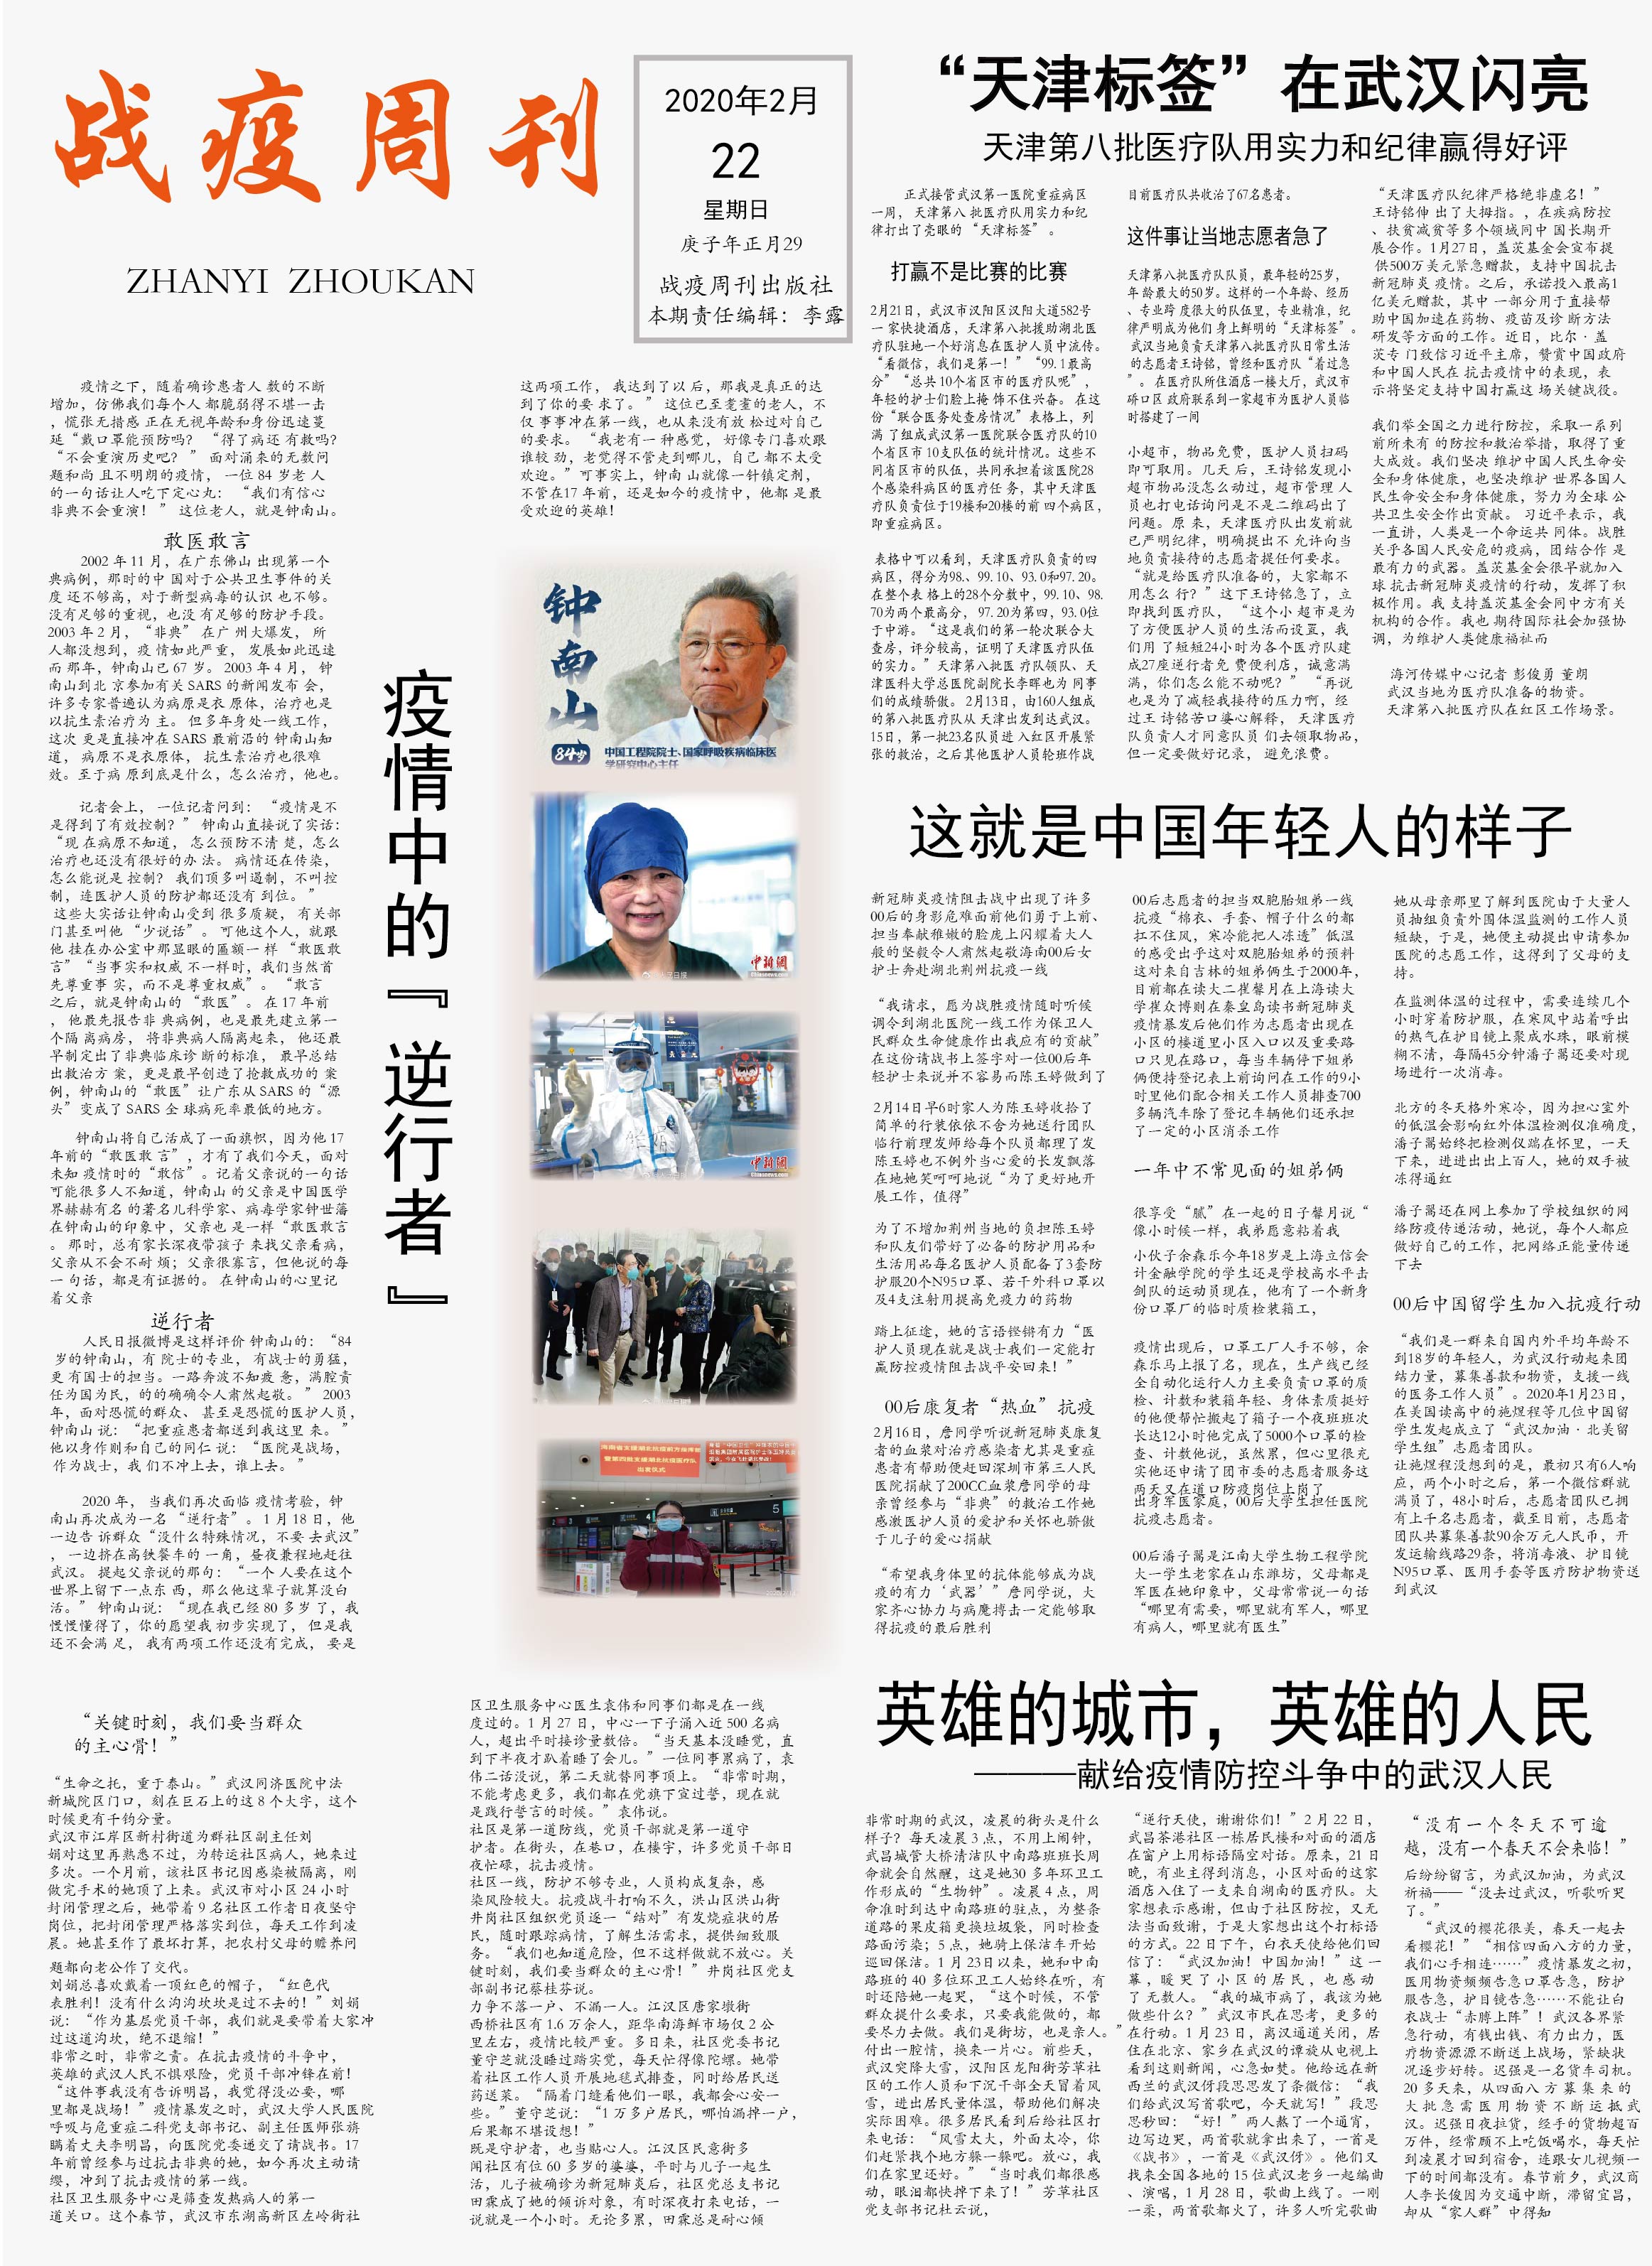 编者按:自从疫情爆发以来,天津外国语大学国际传媒学院新闻传播广告